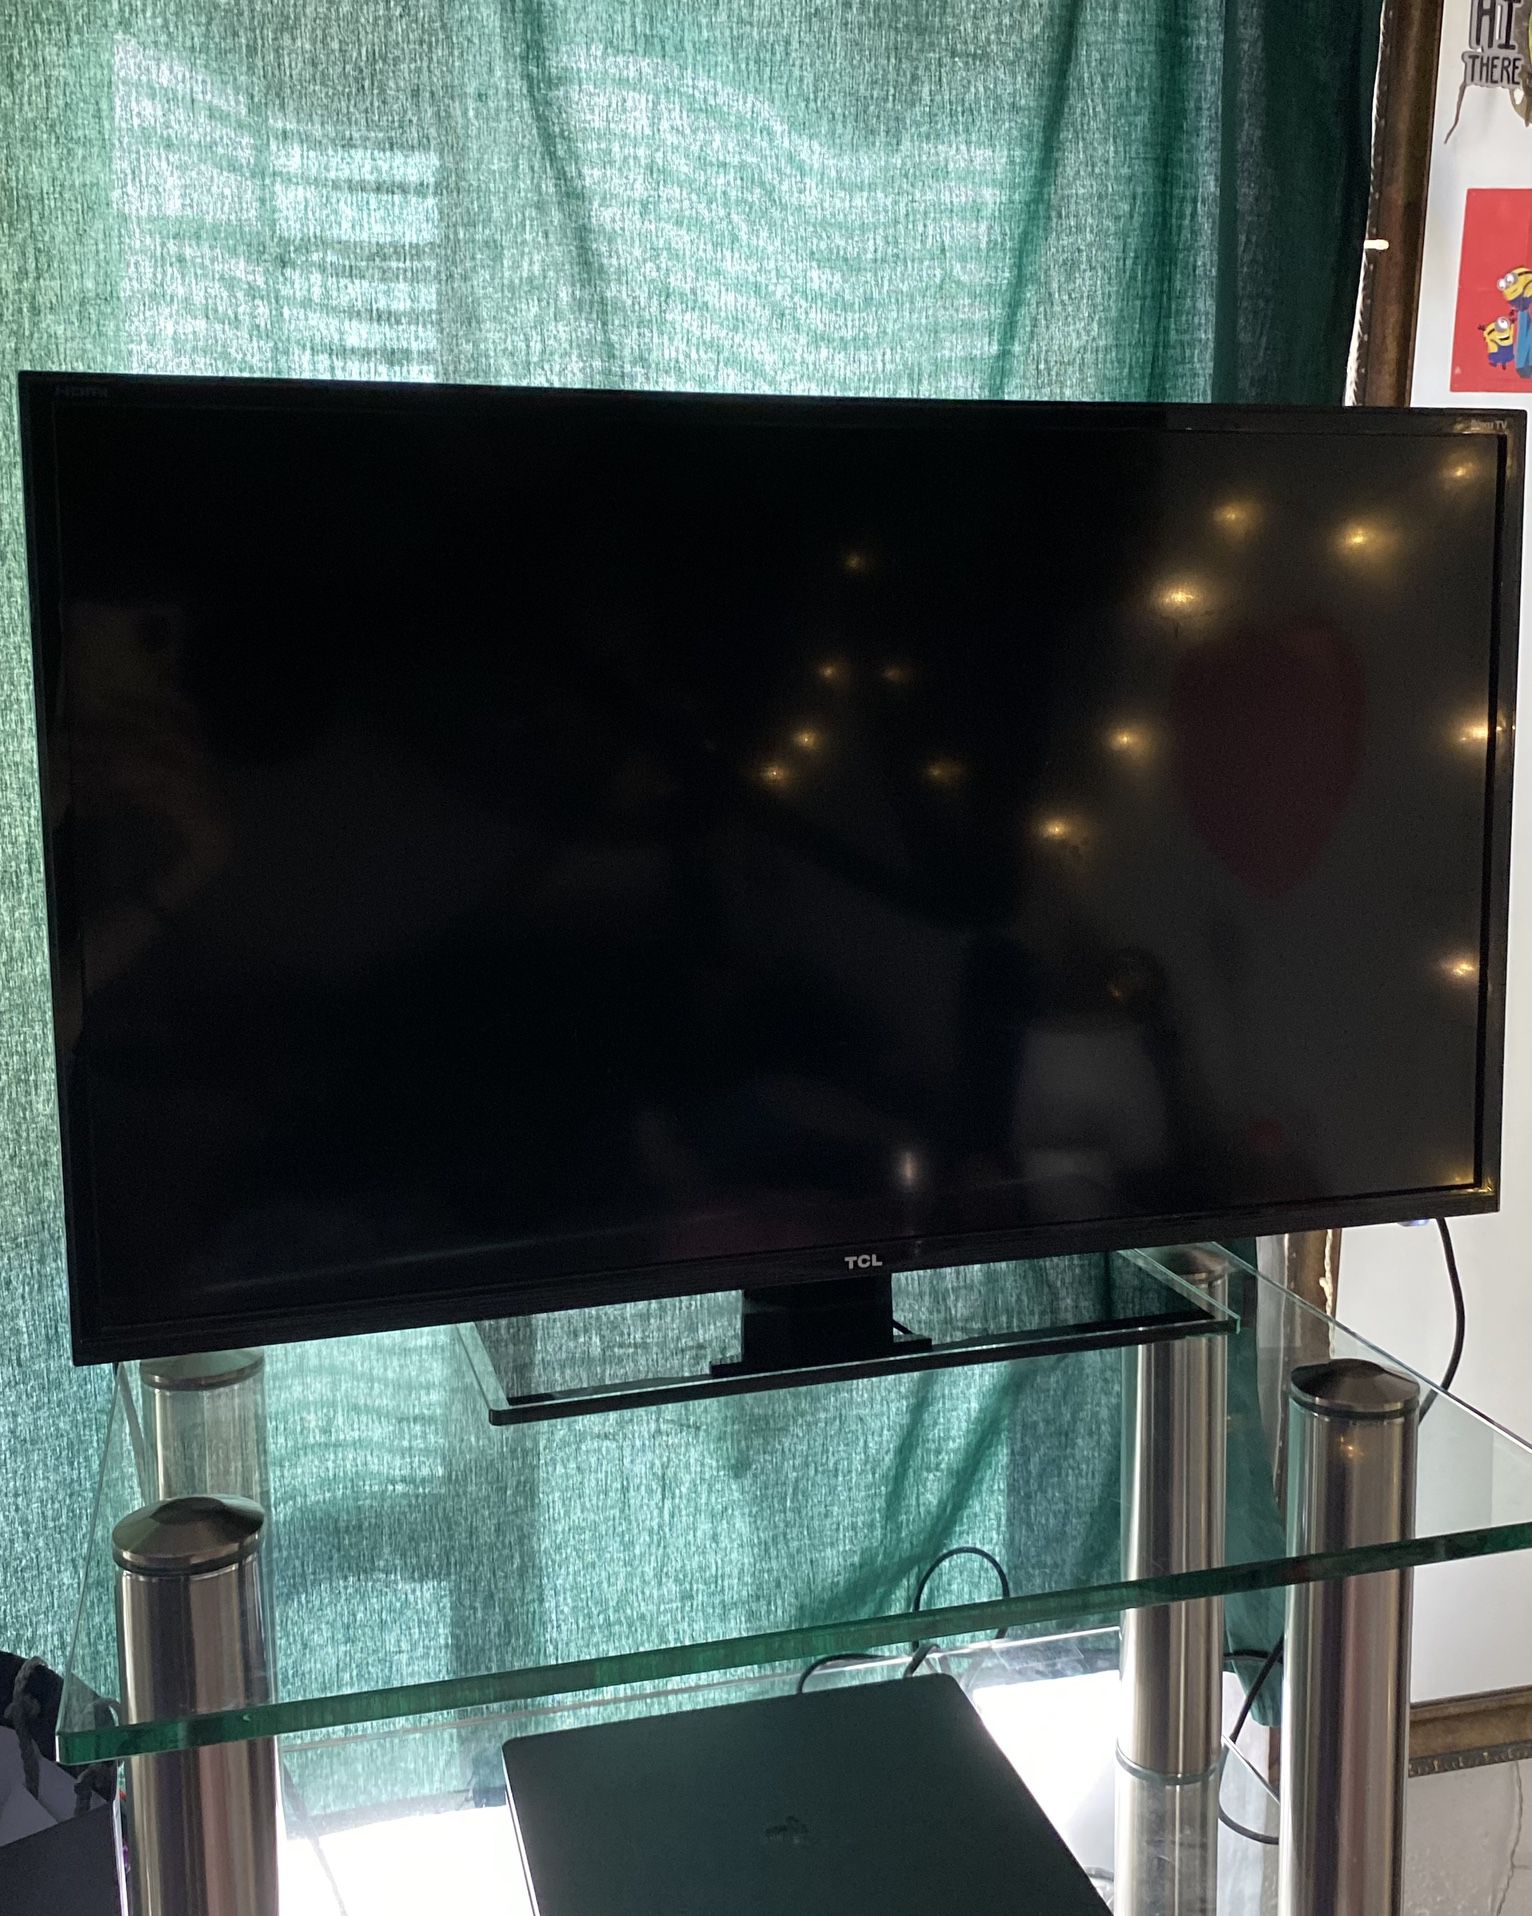 TCL 32” LED HD Roku TV